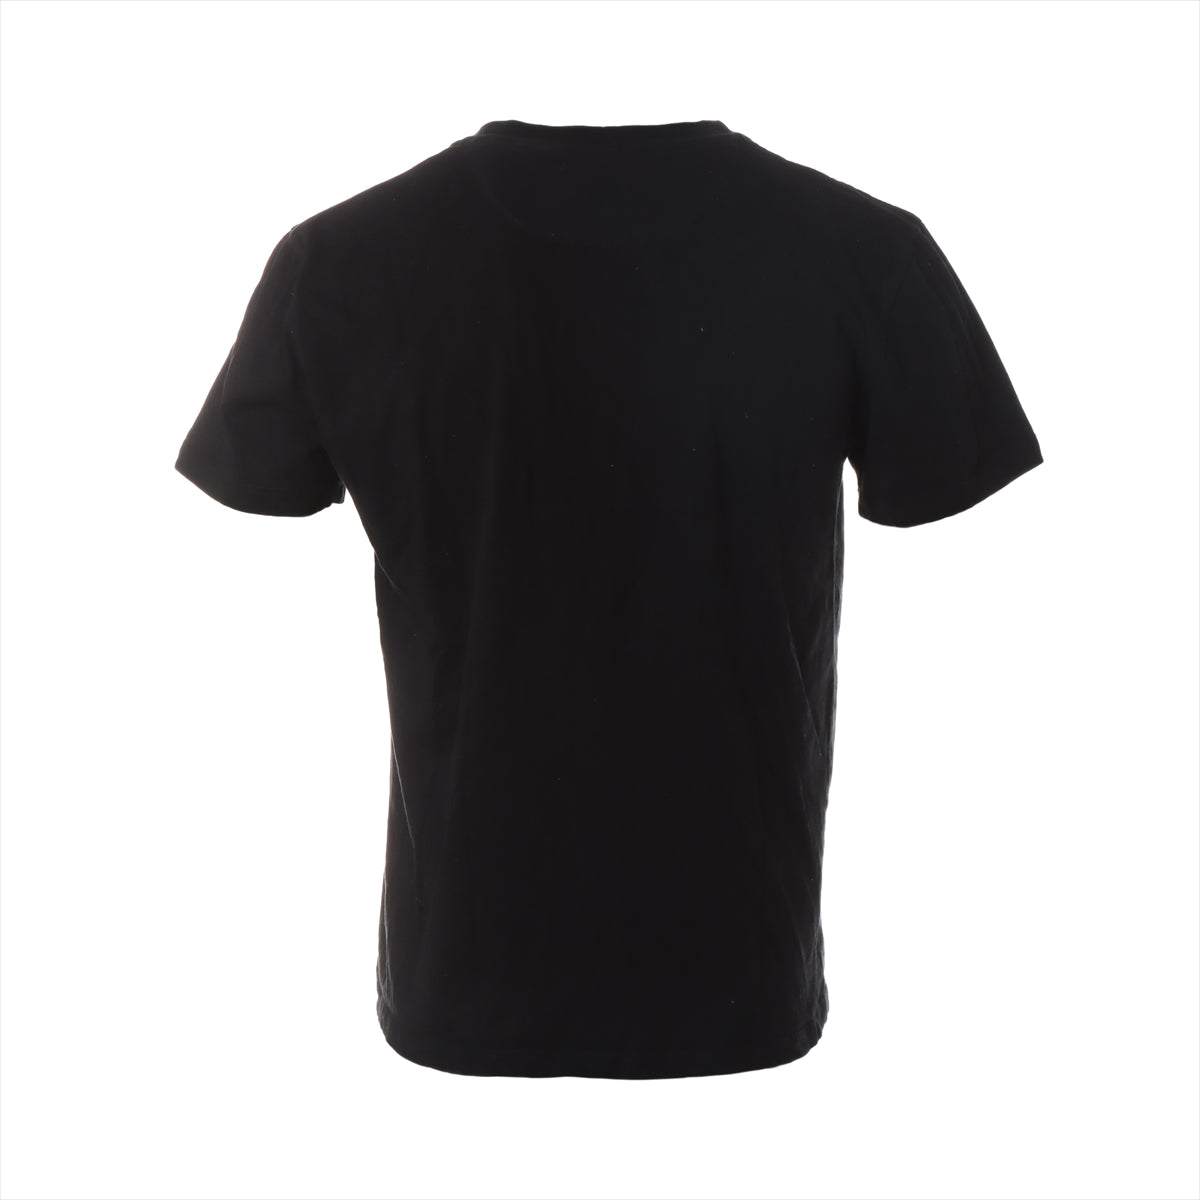 ヴァレンティノ VLTNロゴ コットン Tシャツ M メンズ ブラック ...